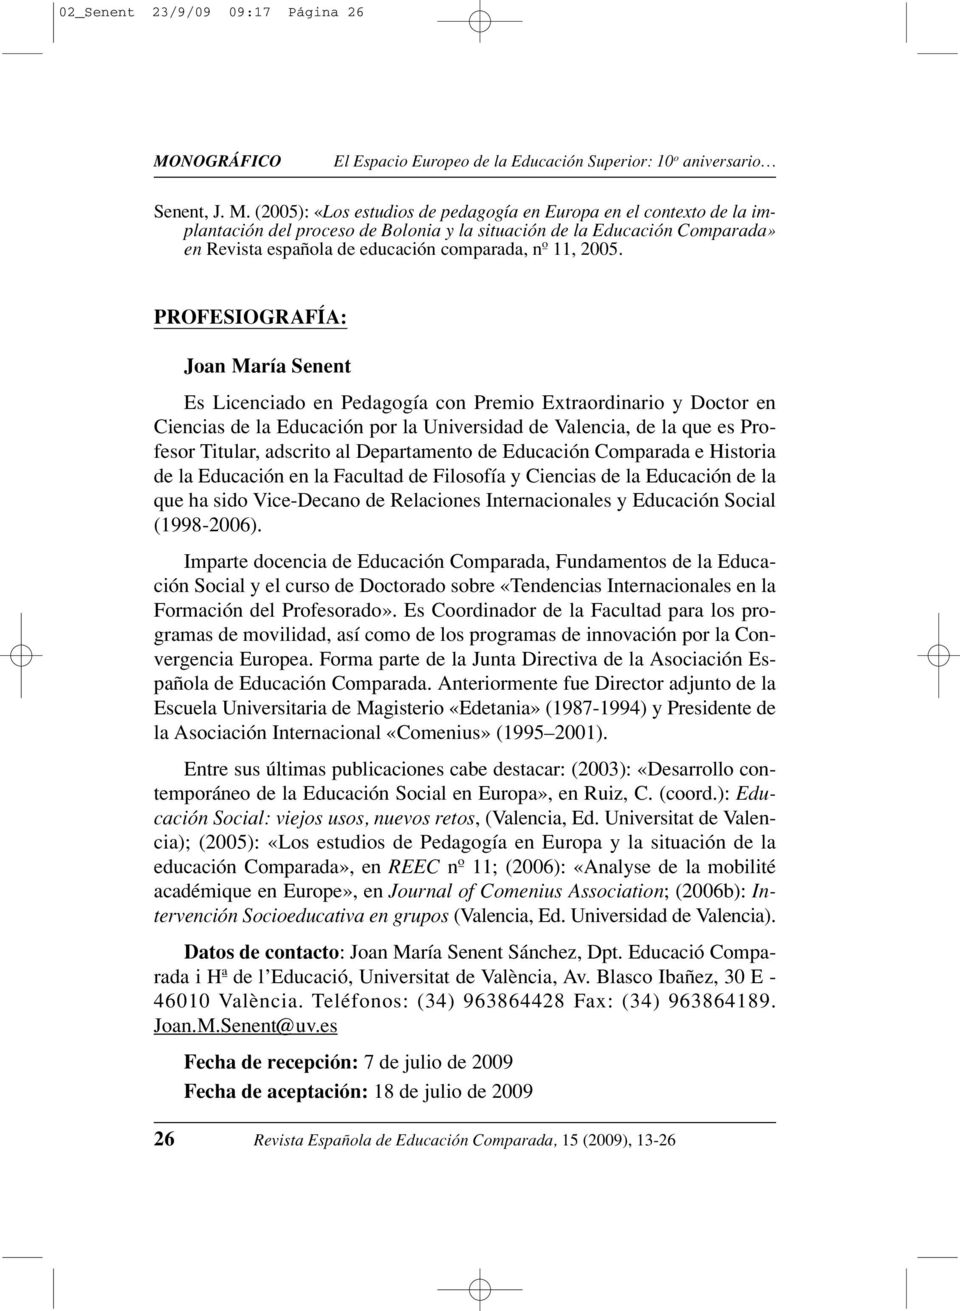 (2005): «Los estudios de pedagogía en Europa en el contexto de la implantación del proceso de Bolonia y la situación de la Educación Comparada» en Revista española de educación comparada, nº 11, 2005.